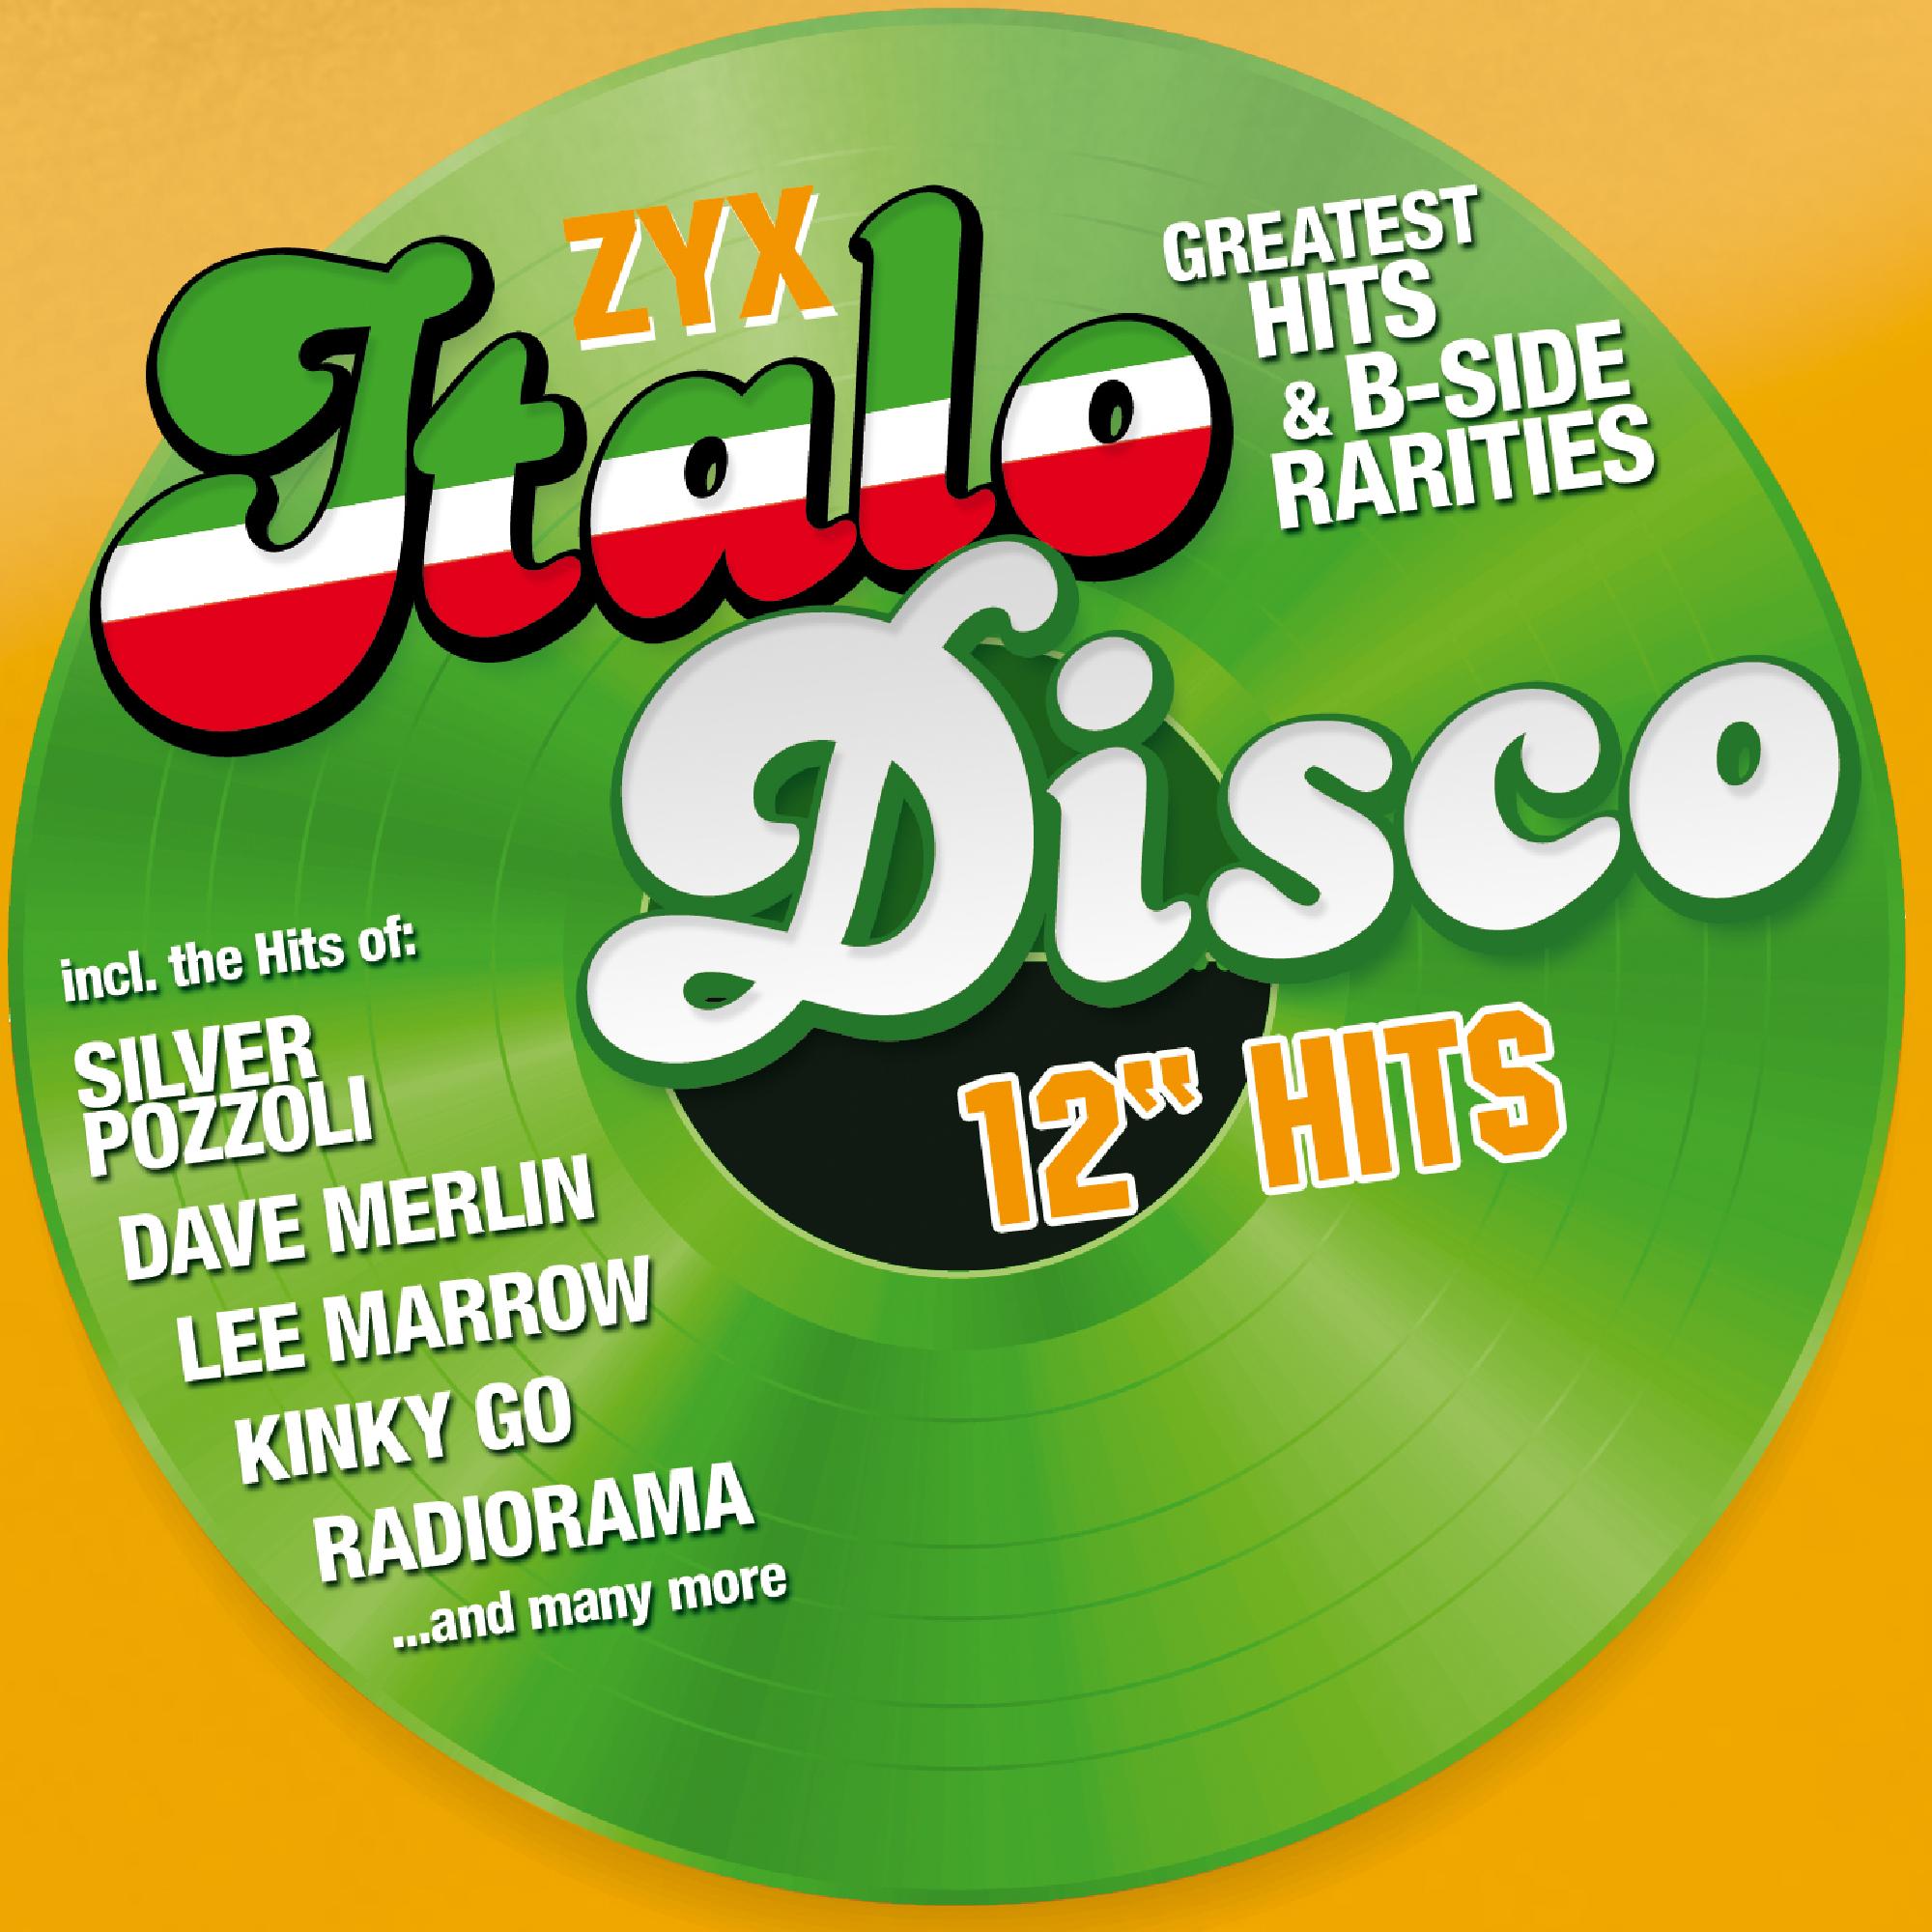 Альбом итало диско. ZYX Italo Disco New. Italo Disco обложка альбома. ZYX Italo Disco Hits. Итало диско сборник.